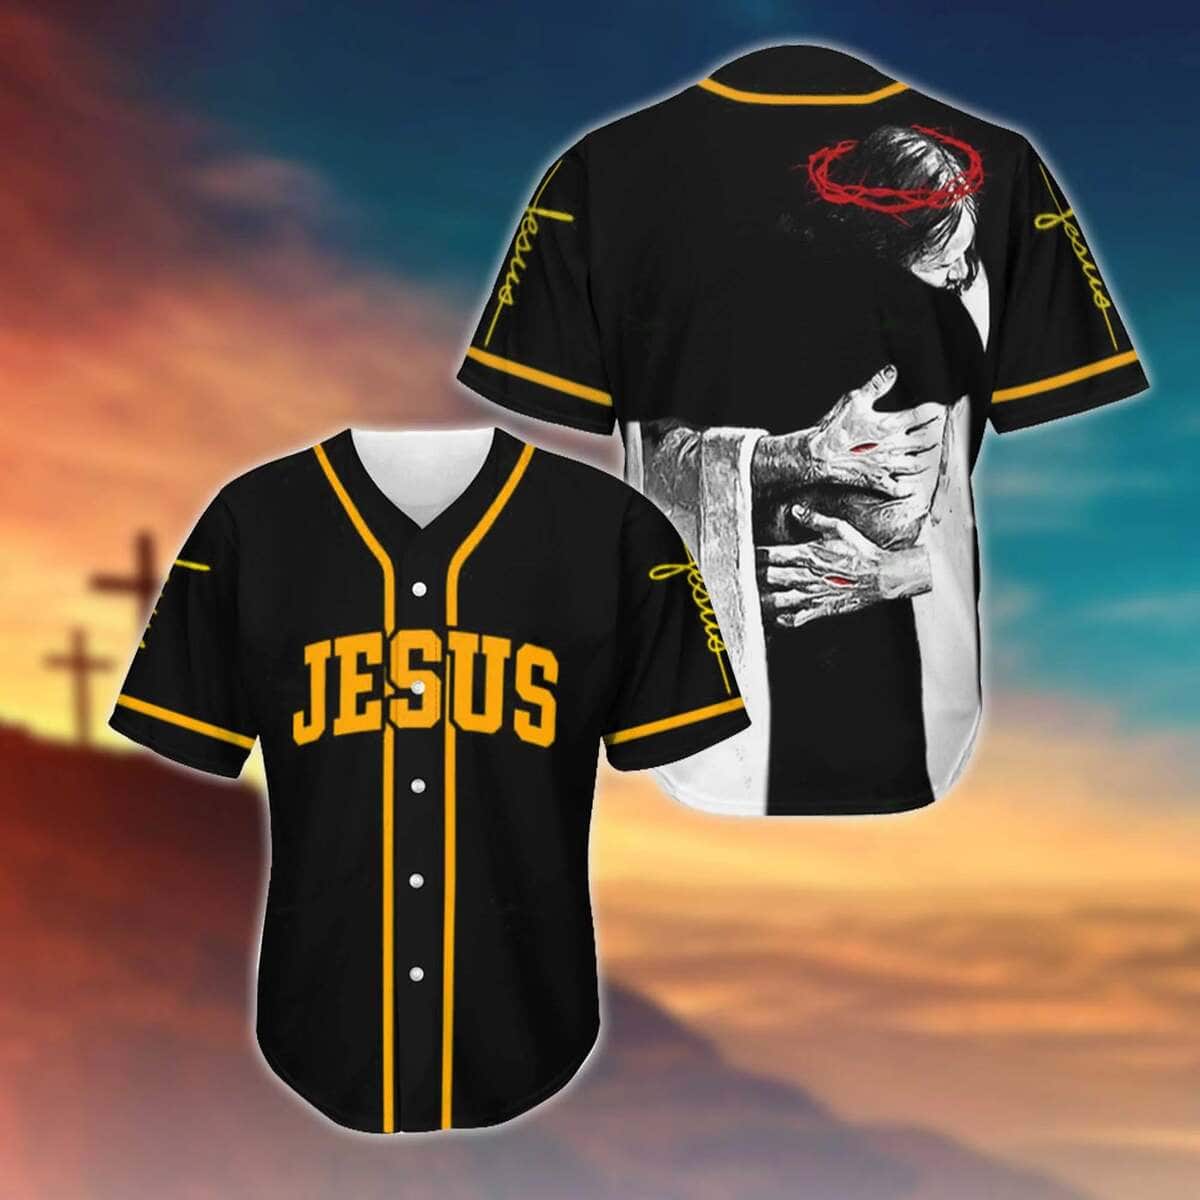 Jesus God's Hug Baseball Jersey Christian Gift For Friends